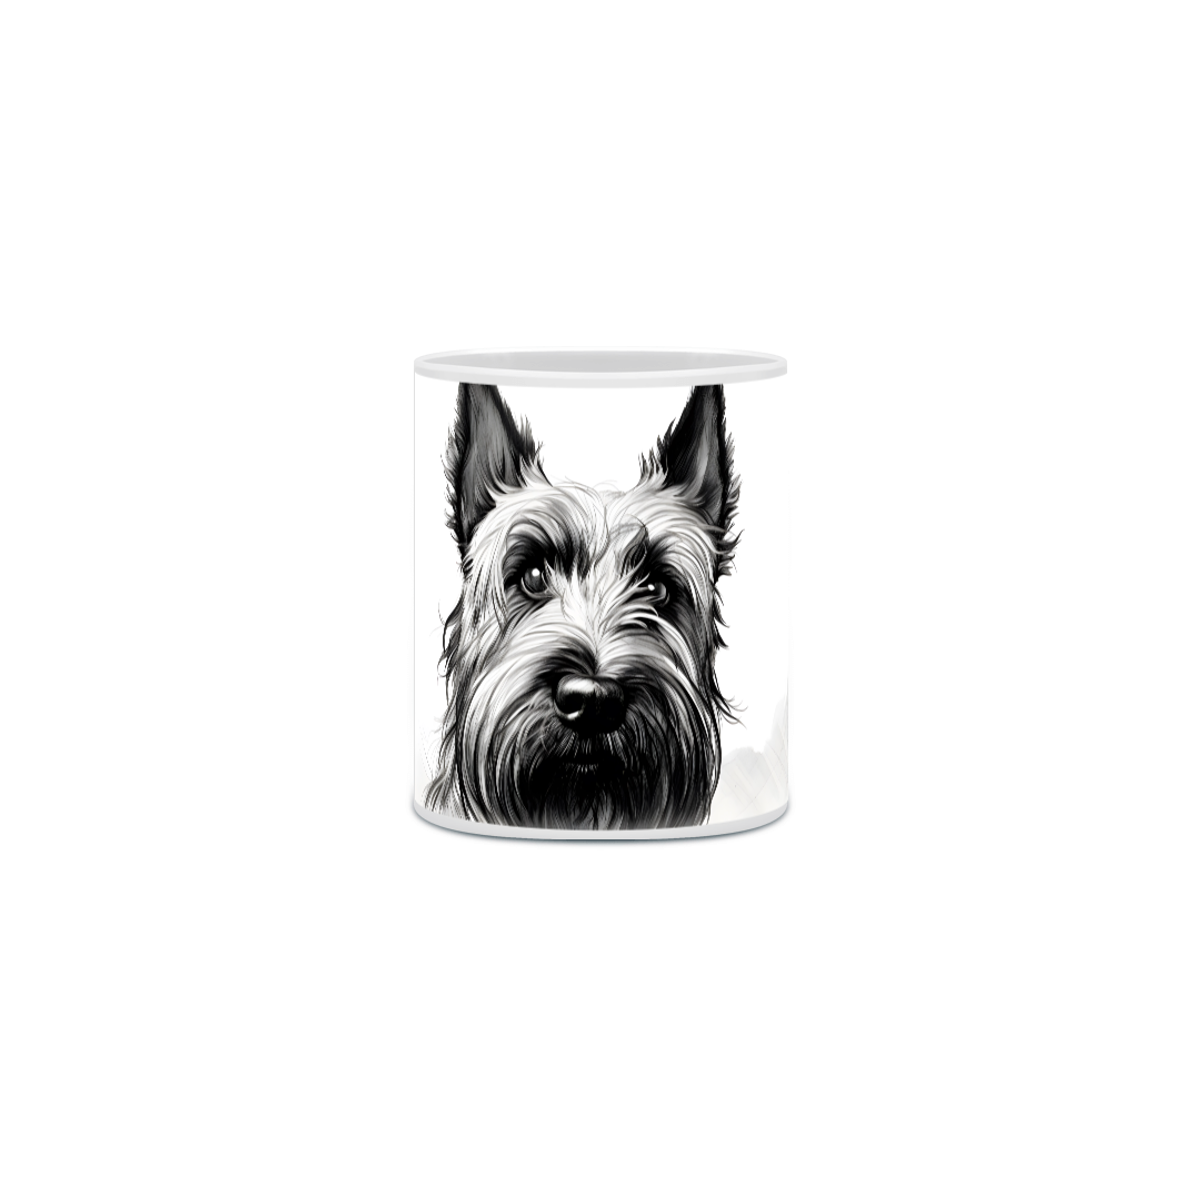 Nome do produto: Caneca Scottish Terrier com Arte Digital - #Autenticidade 0010